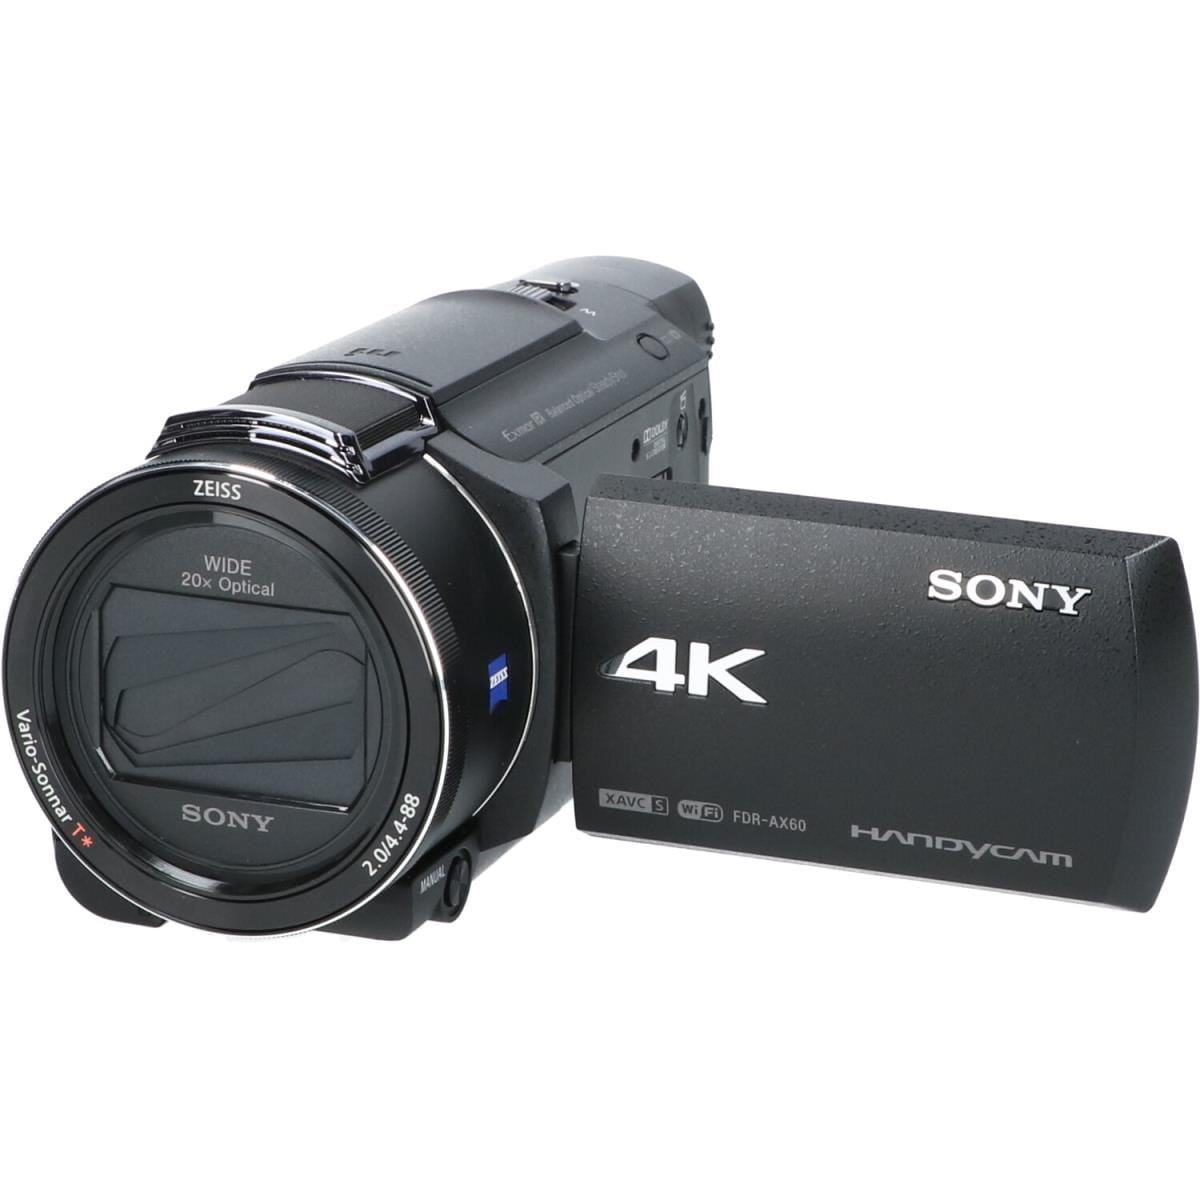 KOMEHYO |SONY FDR-AX60|SONY|Camera|Camcorder|[Official] KOMEHYO 